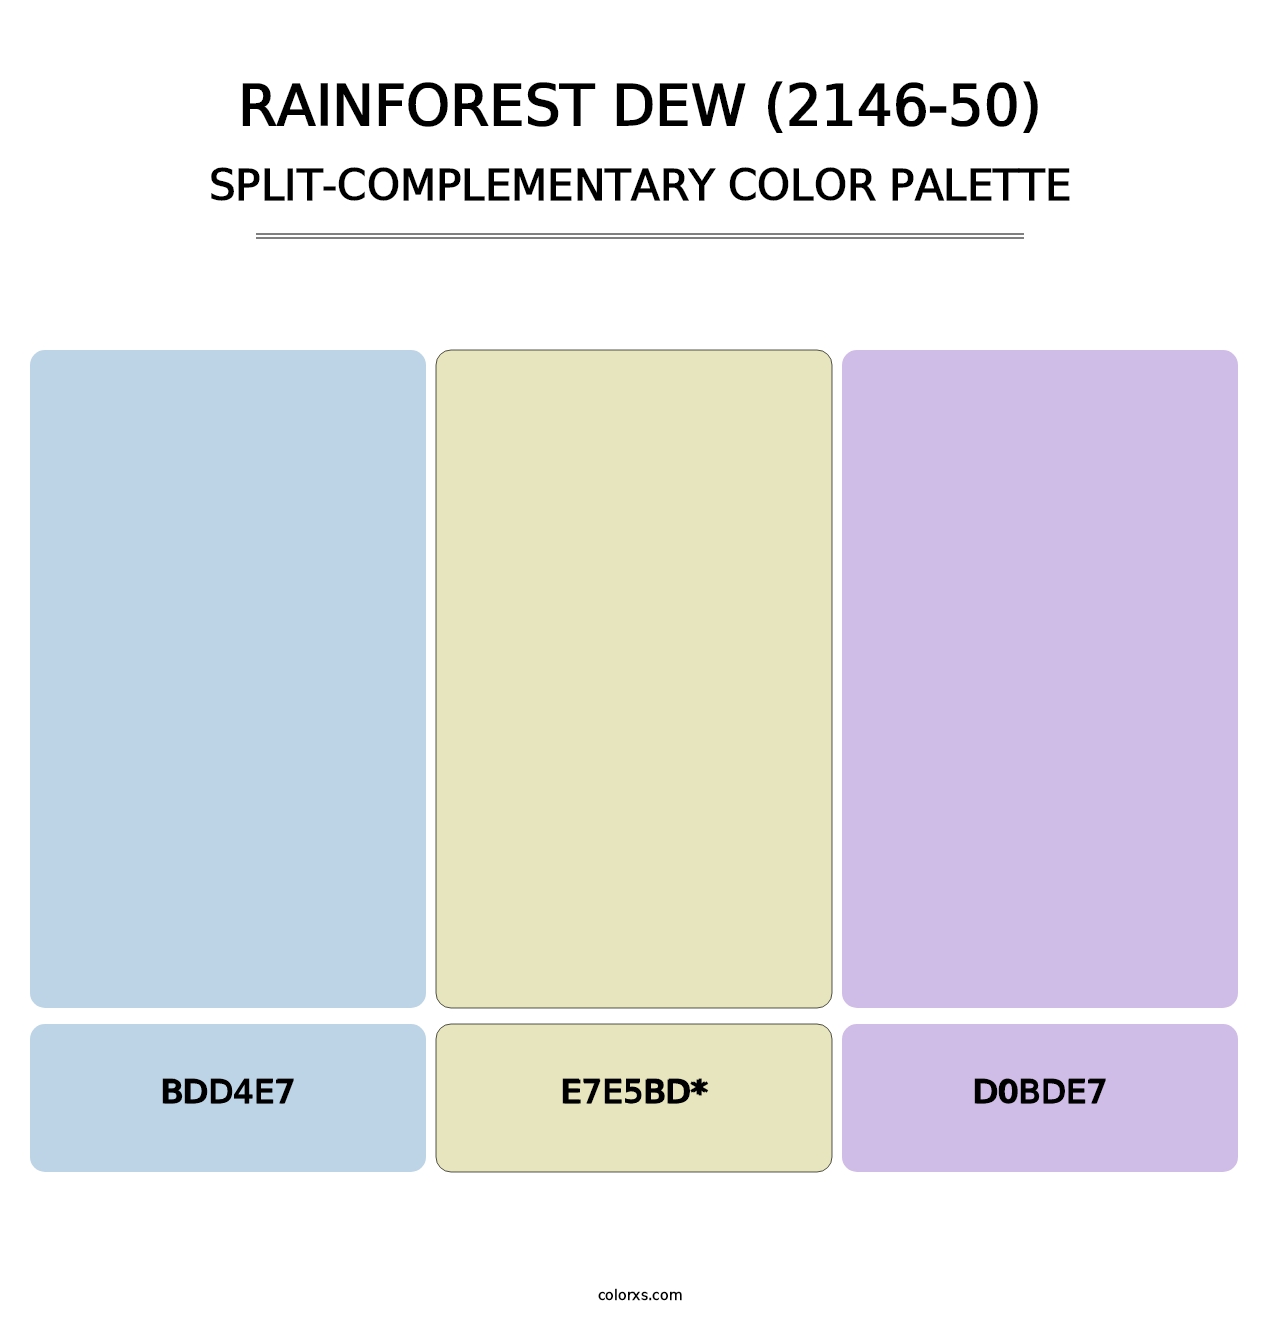 Rainforest Dew (2146-50) - Split-Complementary Color Palette